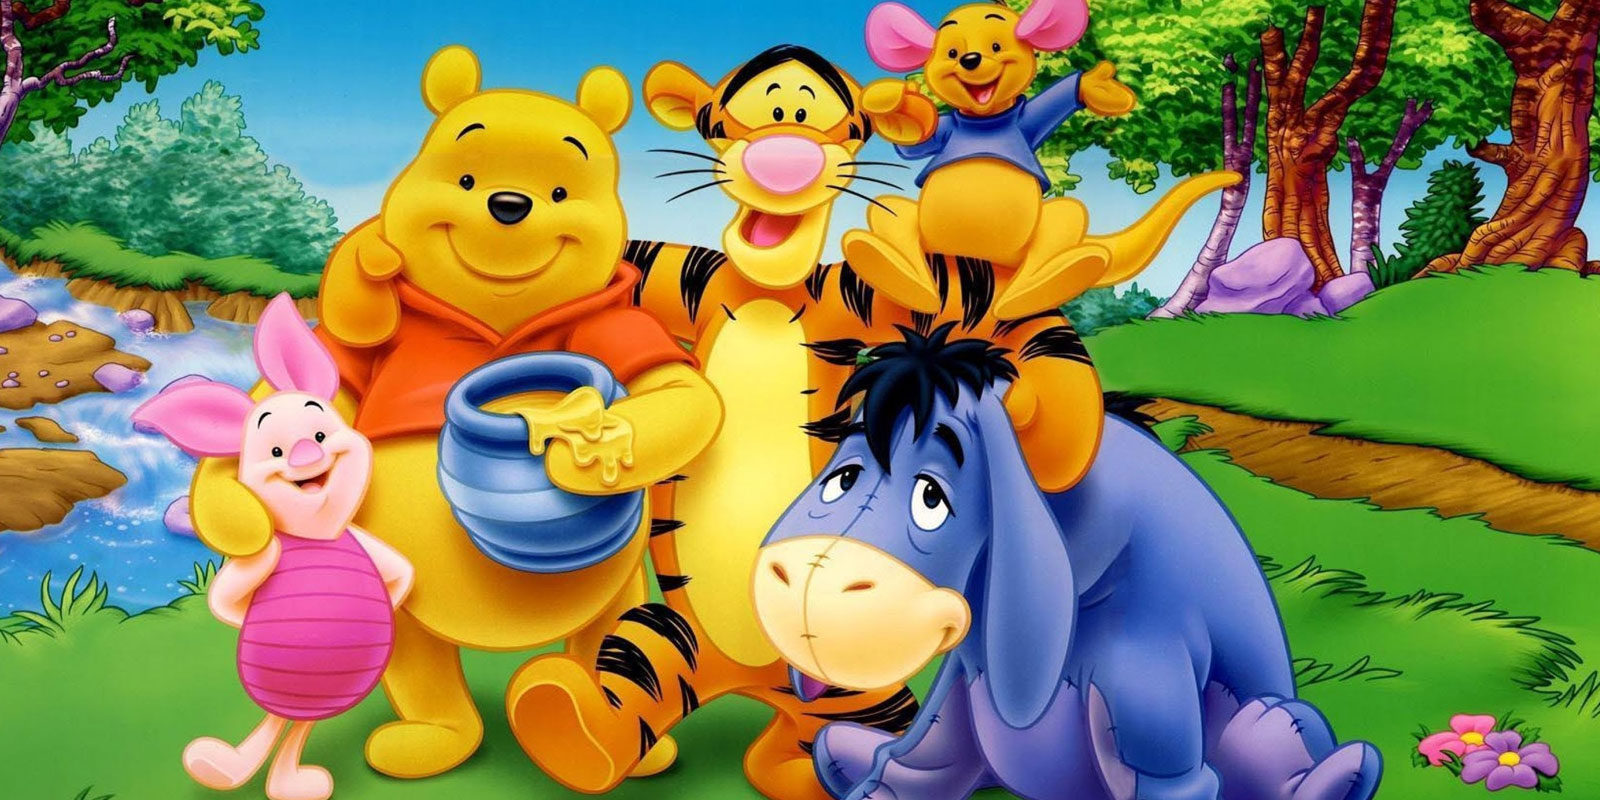 Marc Foster dirigirá la película basada en 'Winnie the pooh'